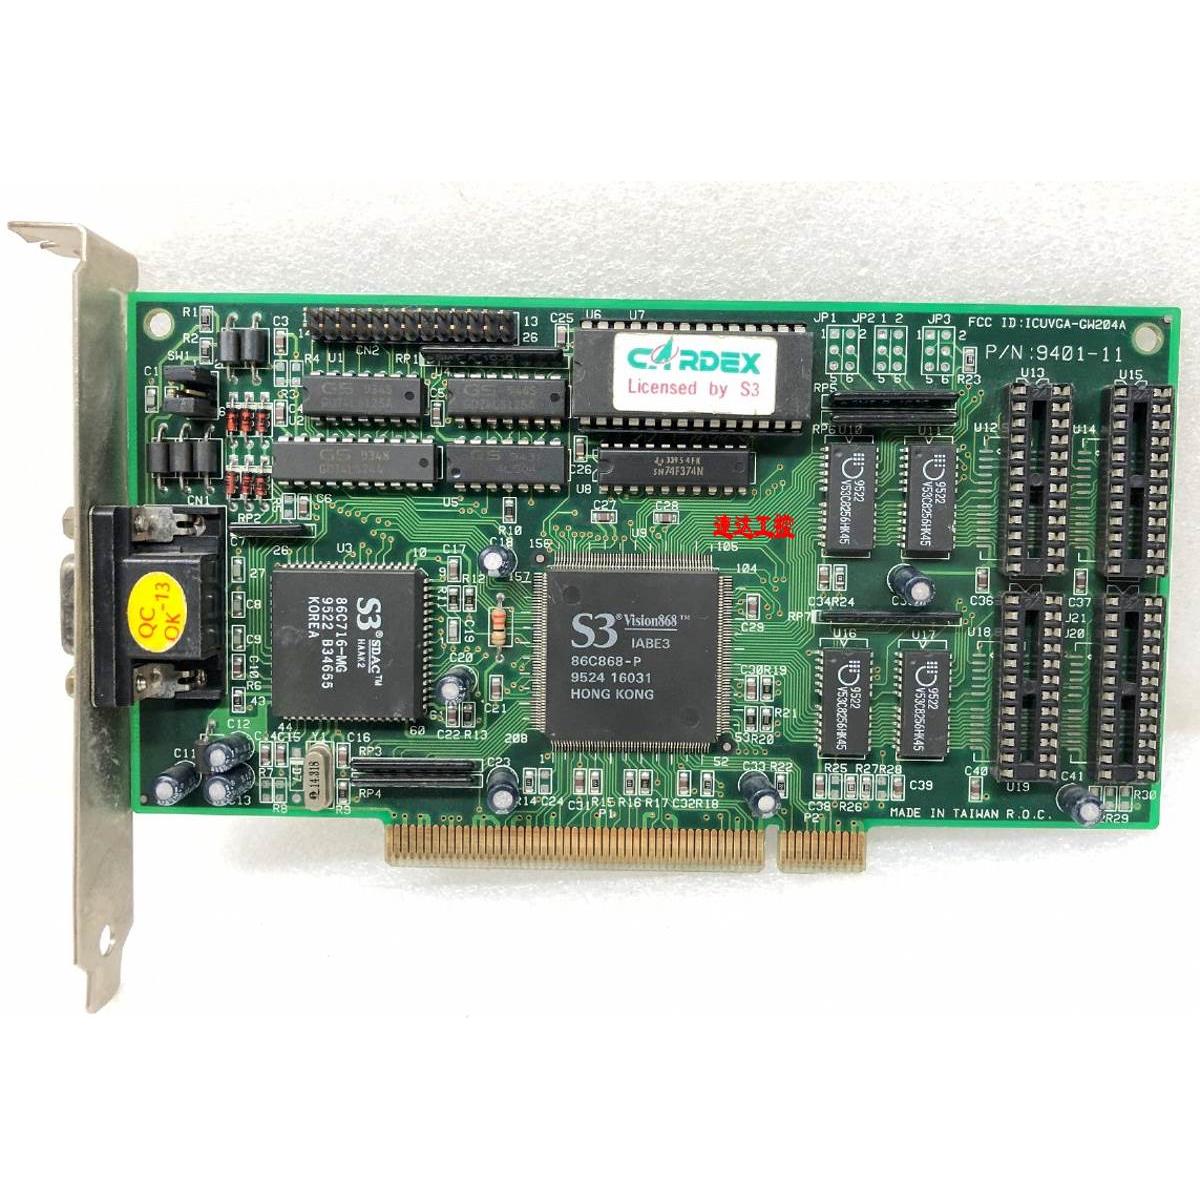 可议价ICUVGA-GW204A 9401-11工业医疗设备PCI显卡VGA接口现货